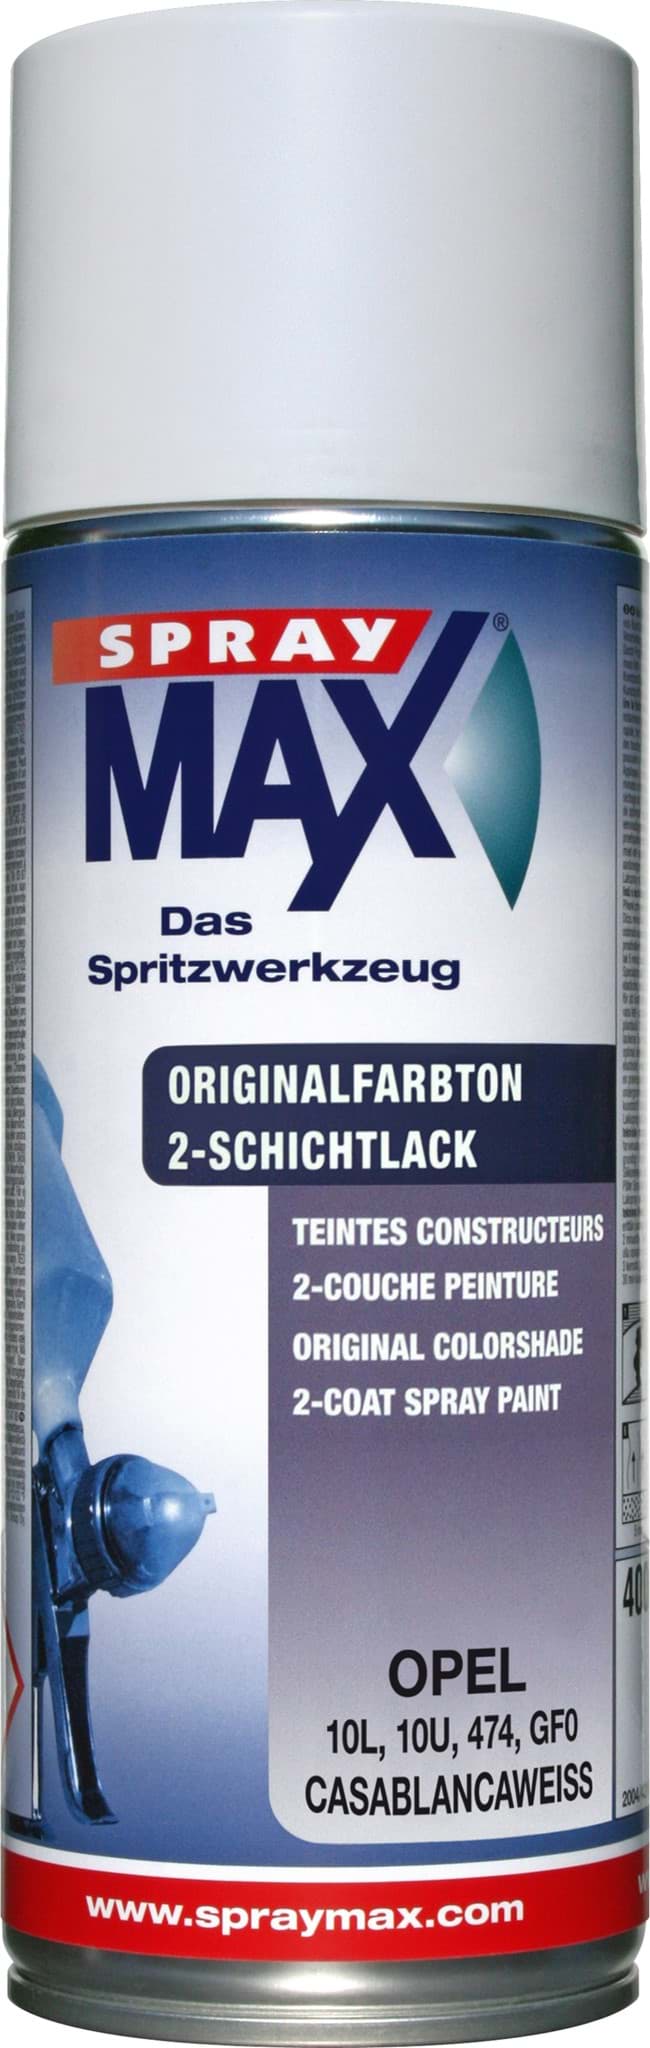 Bild von SprayMax Originalfarbton für Opel 474 casablancaweiss